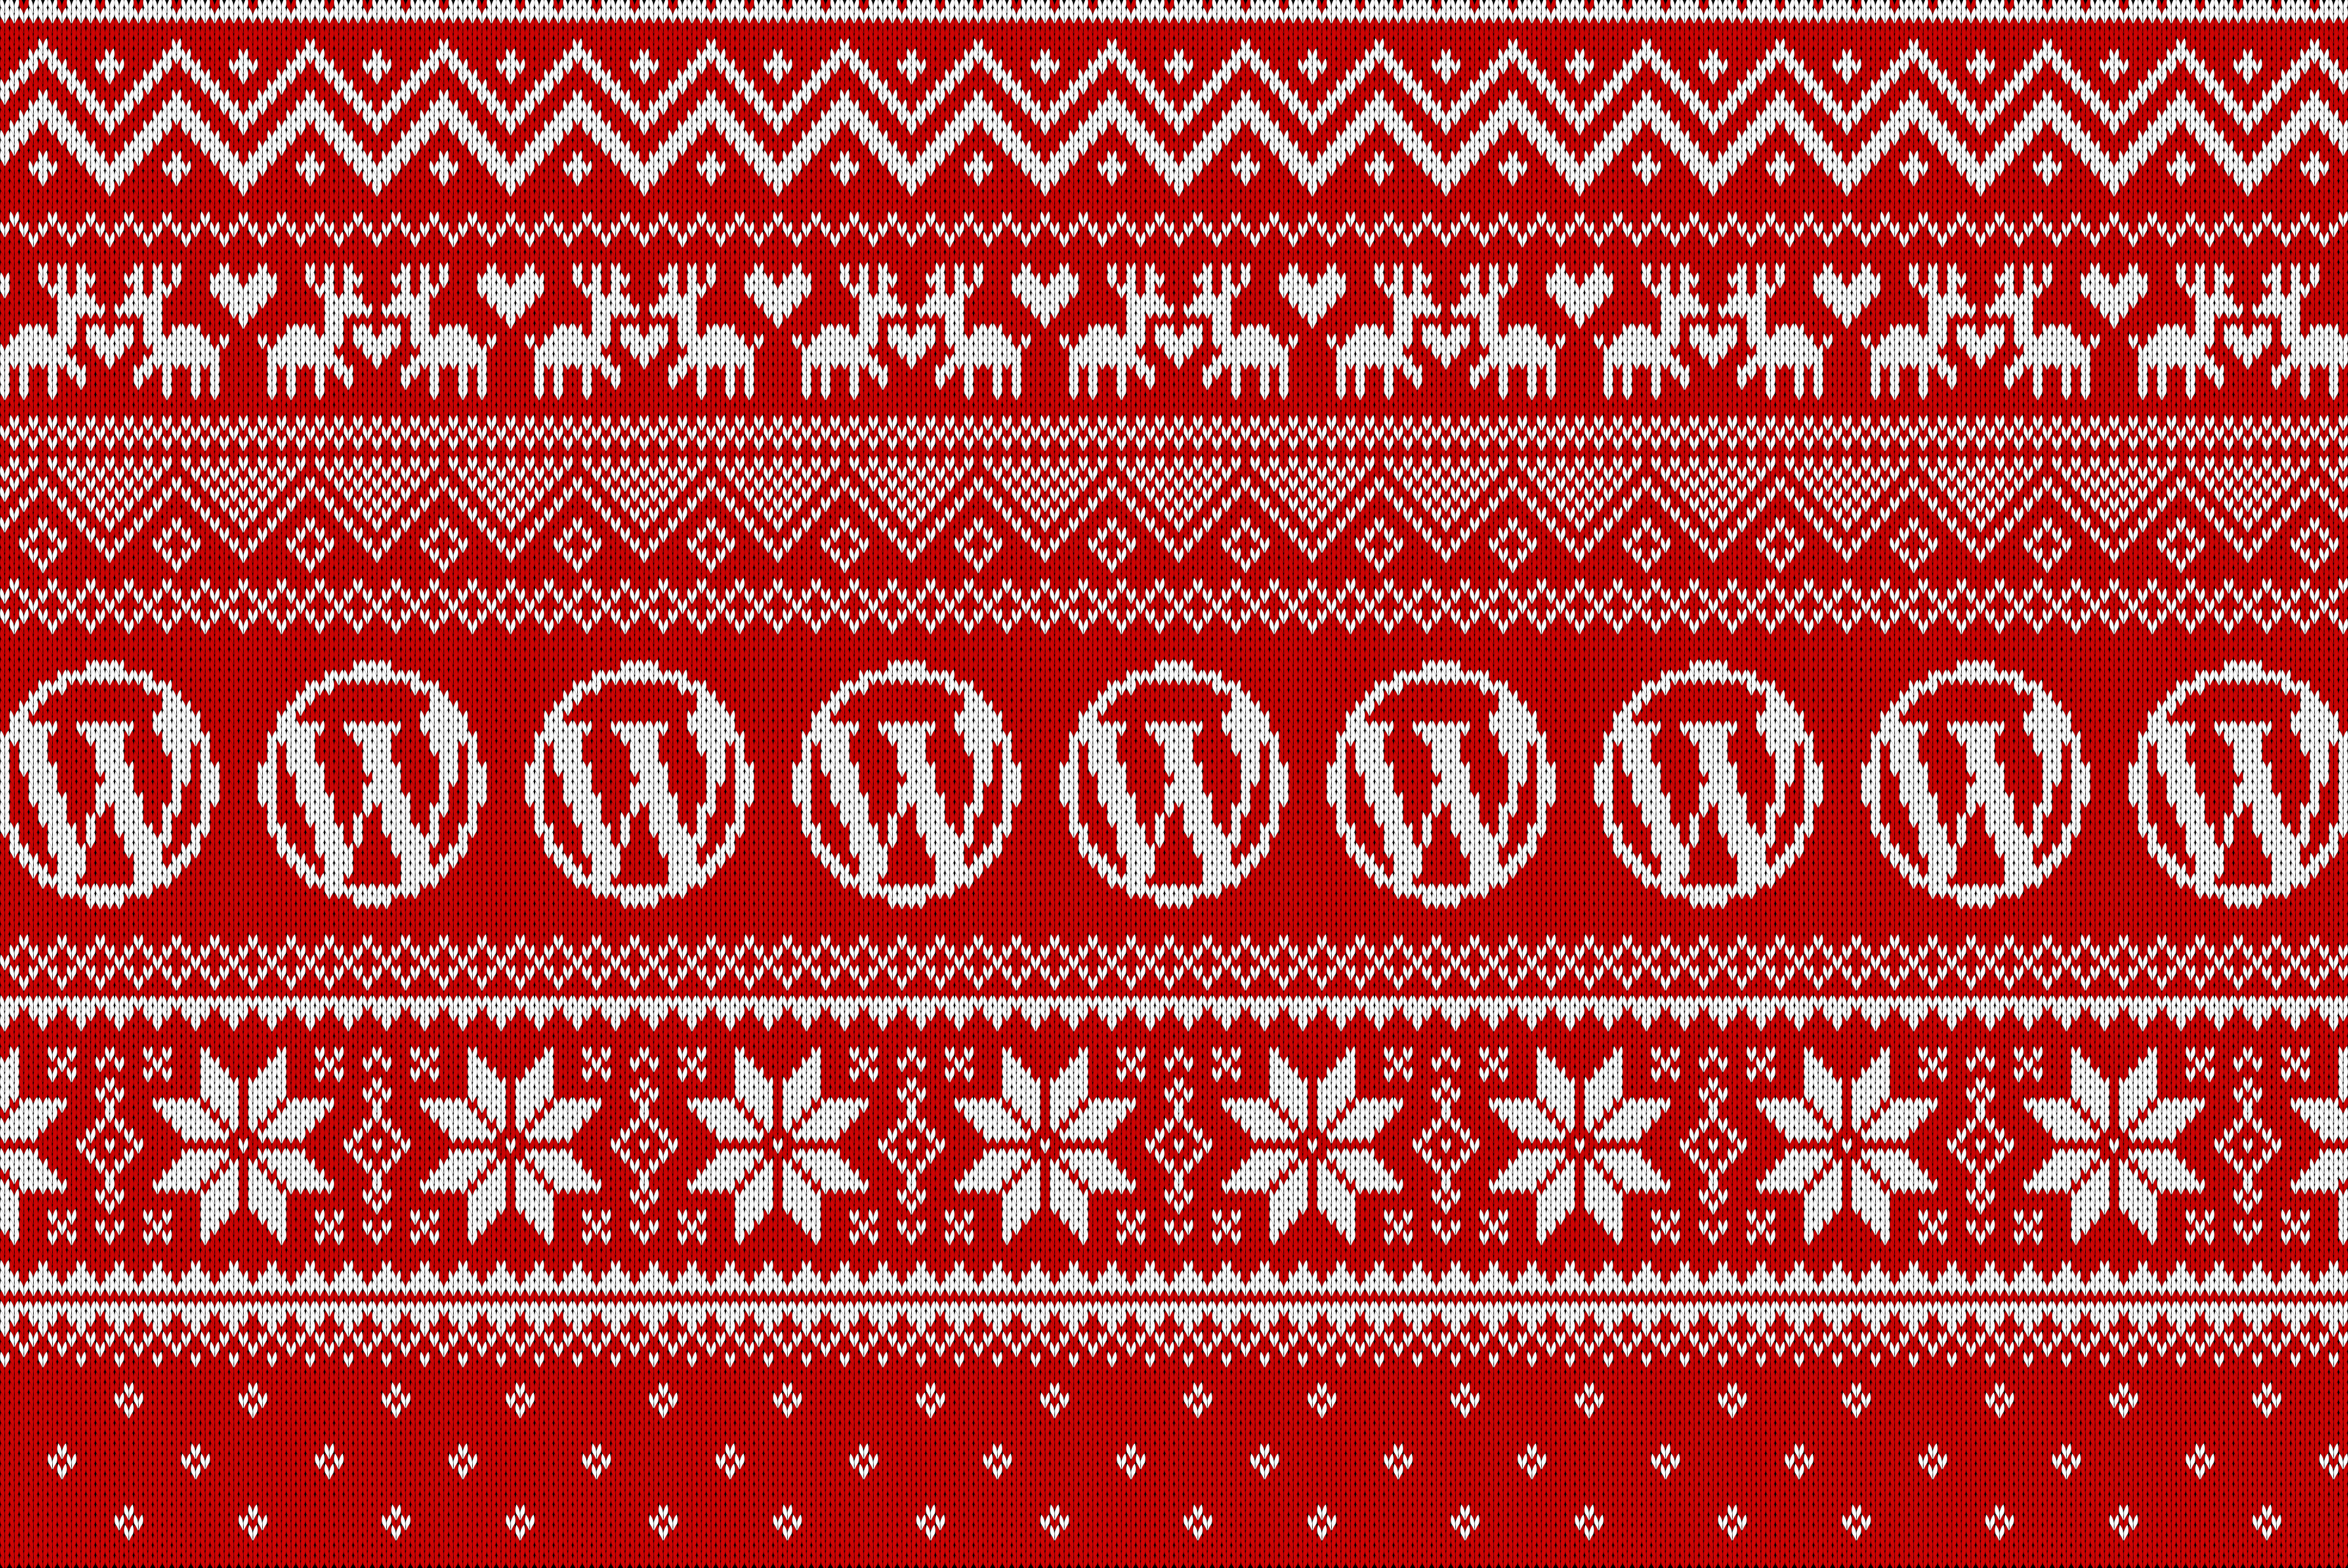 Áo len Giáng sinh xấu là gì? Chỉ là những chiếc áo len đặc biệt với những họa tiết ngộ nghĩnh để mang lại không khí vui tươi trong ngày lễ. Hình nền áo len Giáng sinh xấu của chúng tôi sẽ giúp bạn cập nhật xu hướng thịnh hành đó một cách nhanh chóng và dễ dàng.